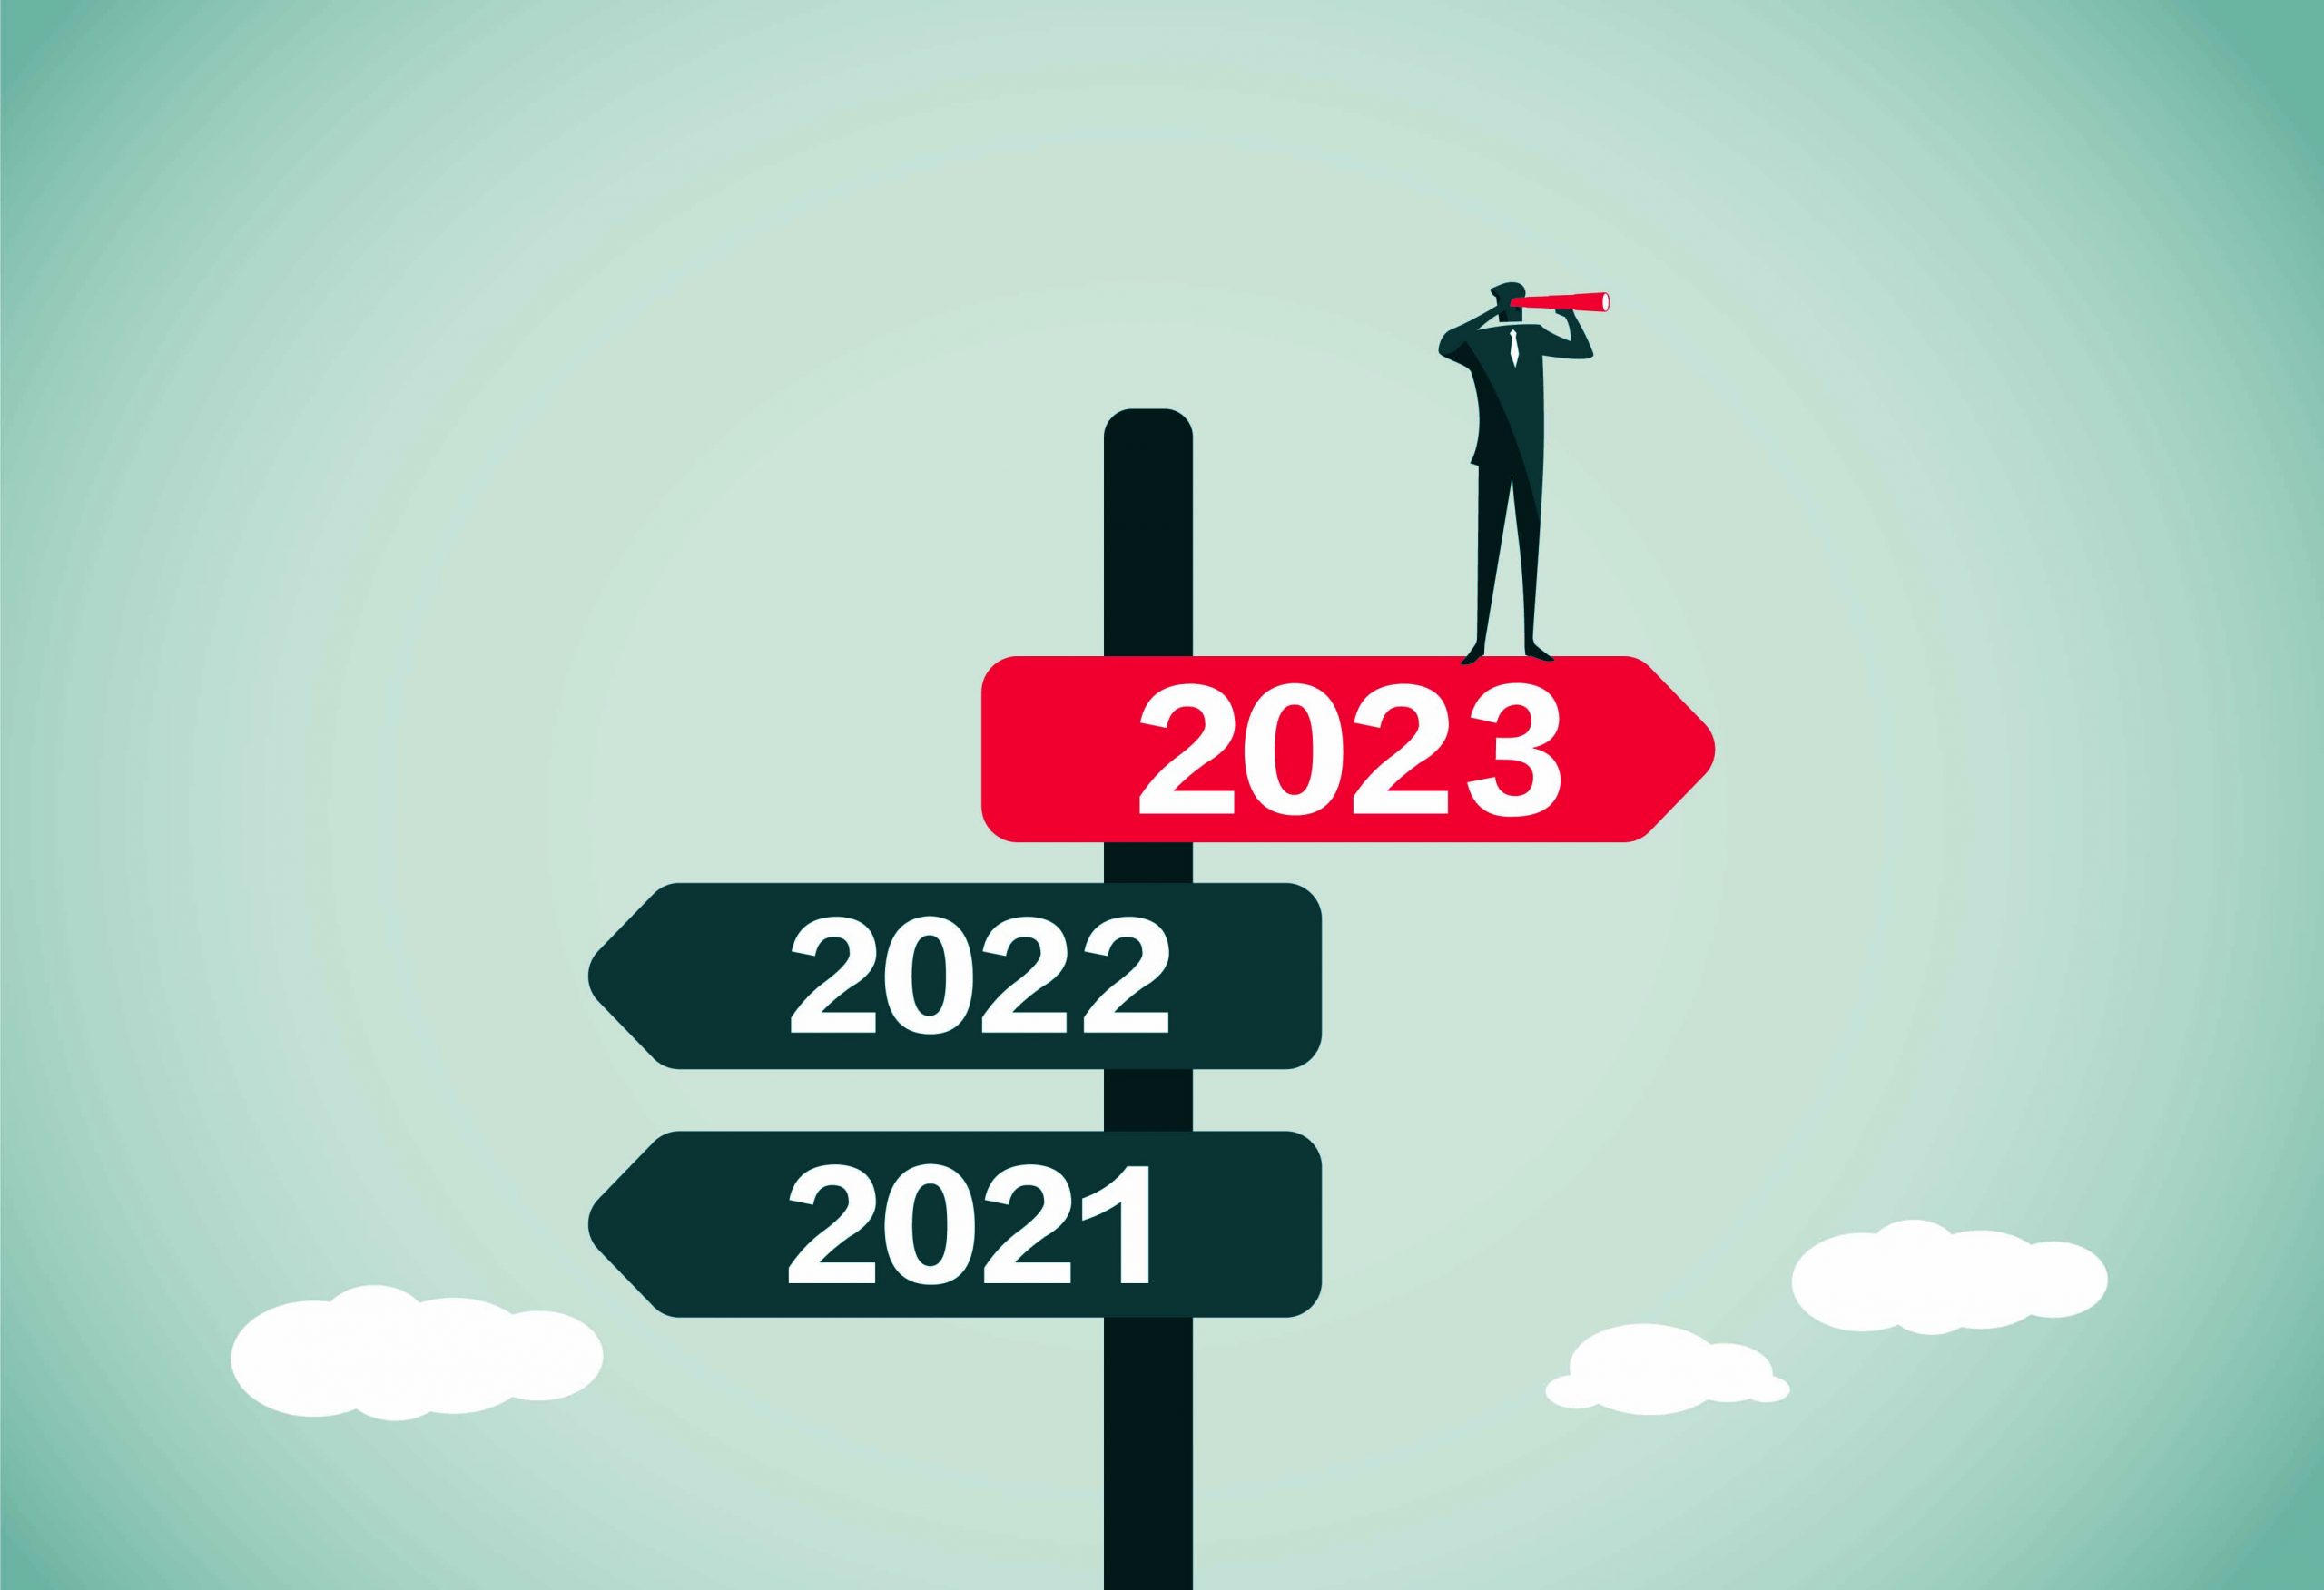 Construye2025 inicia su tercera etapa con importantes desafíos para la industria